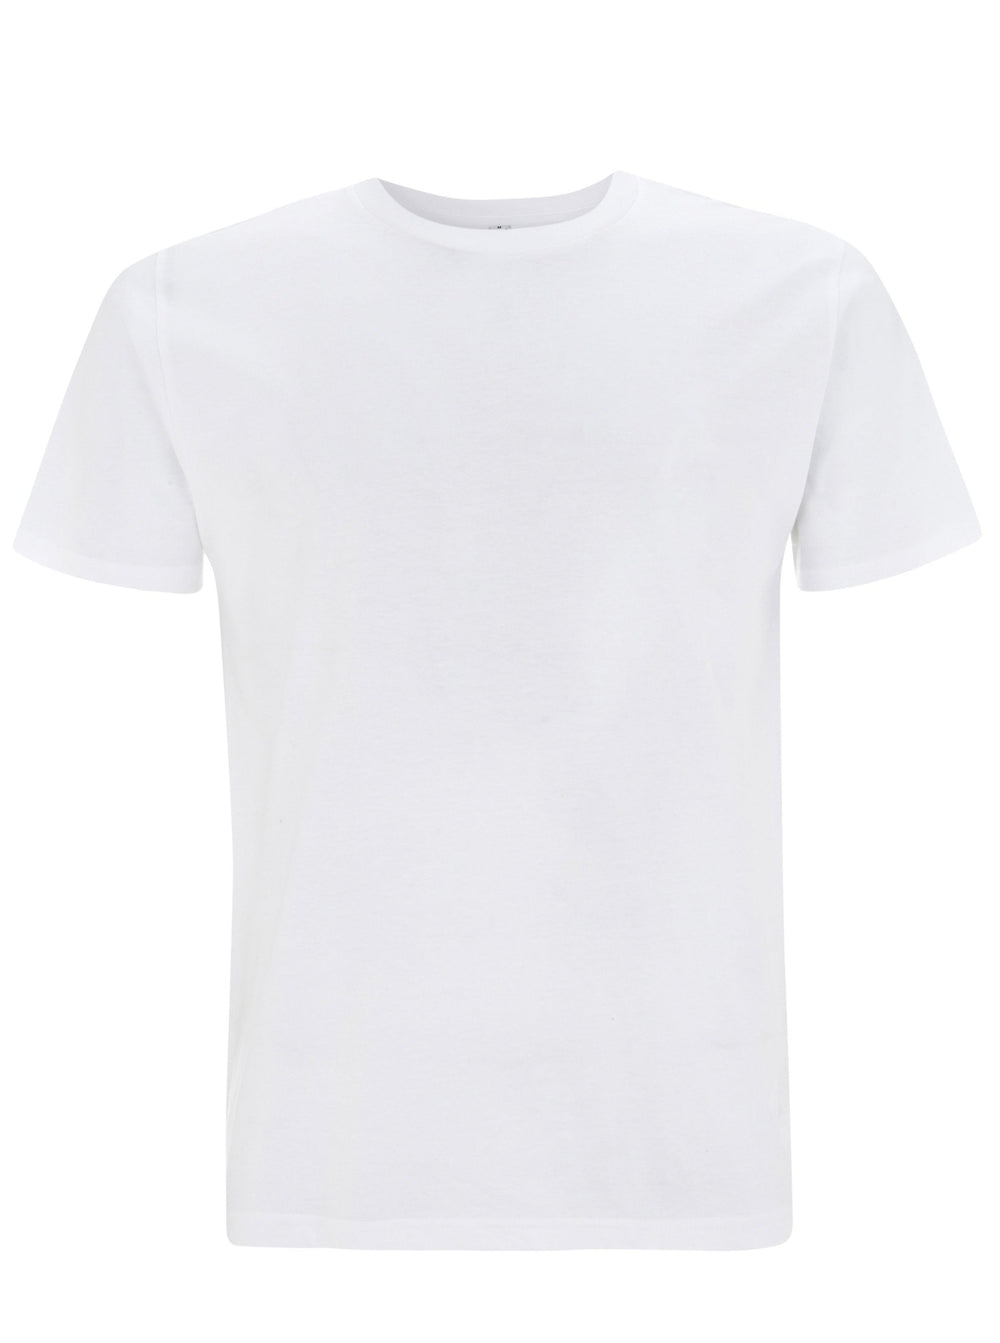 Unisex /Herren Basic Shirt weiß